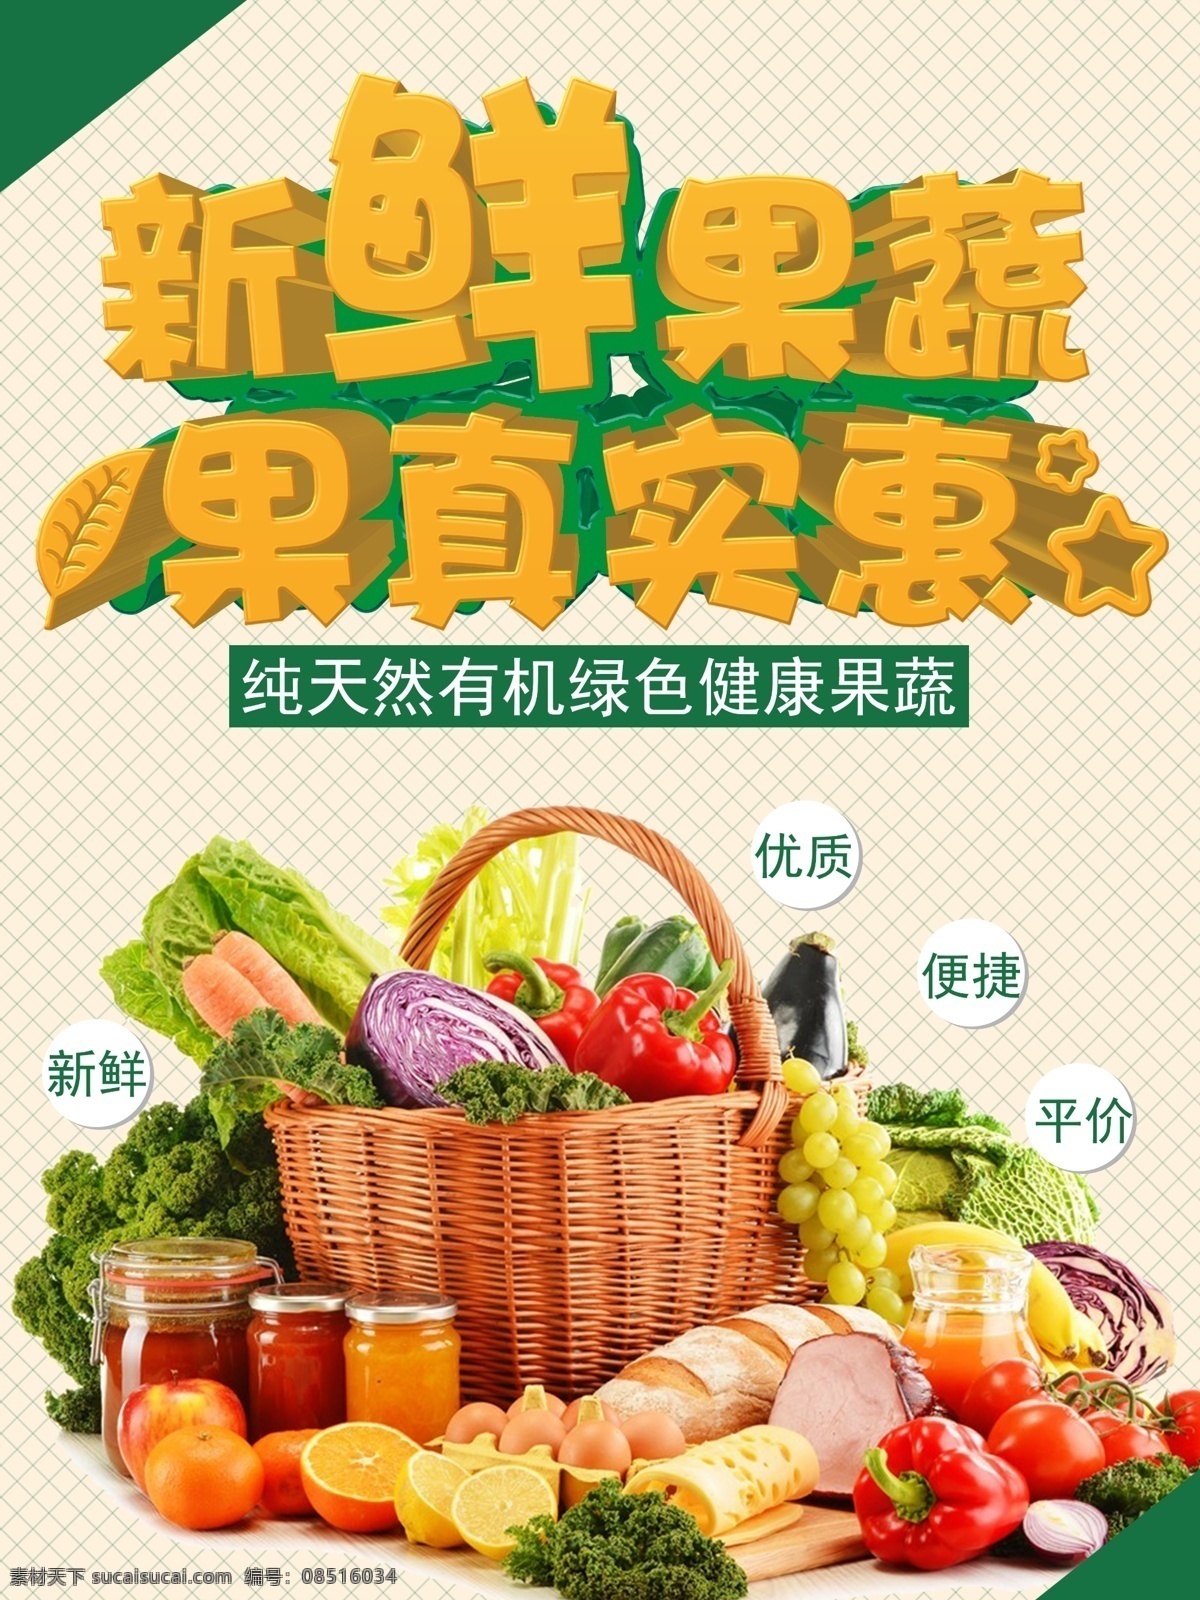 果蔬海报展板 新鲜果蔬 果真实惠 各种水果 蔬菜 菜篮子 格子底纹背景 展板